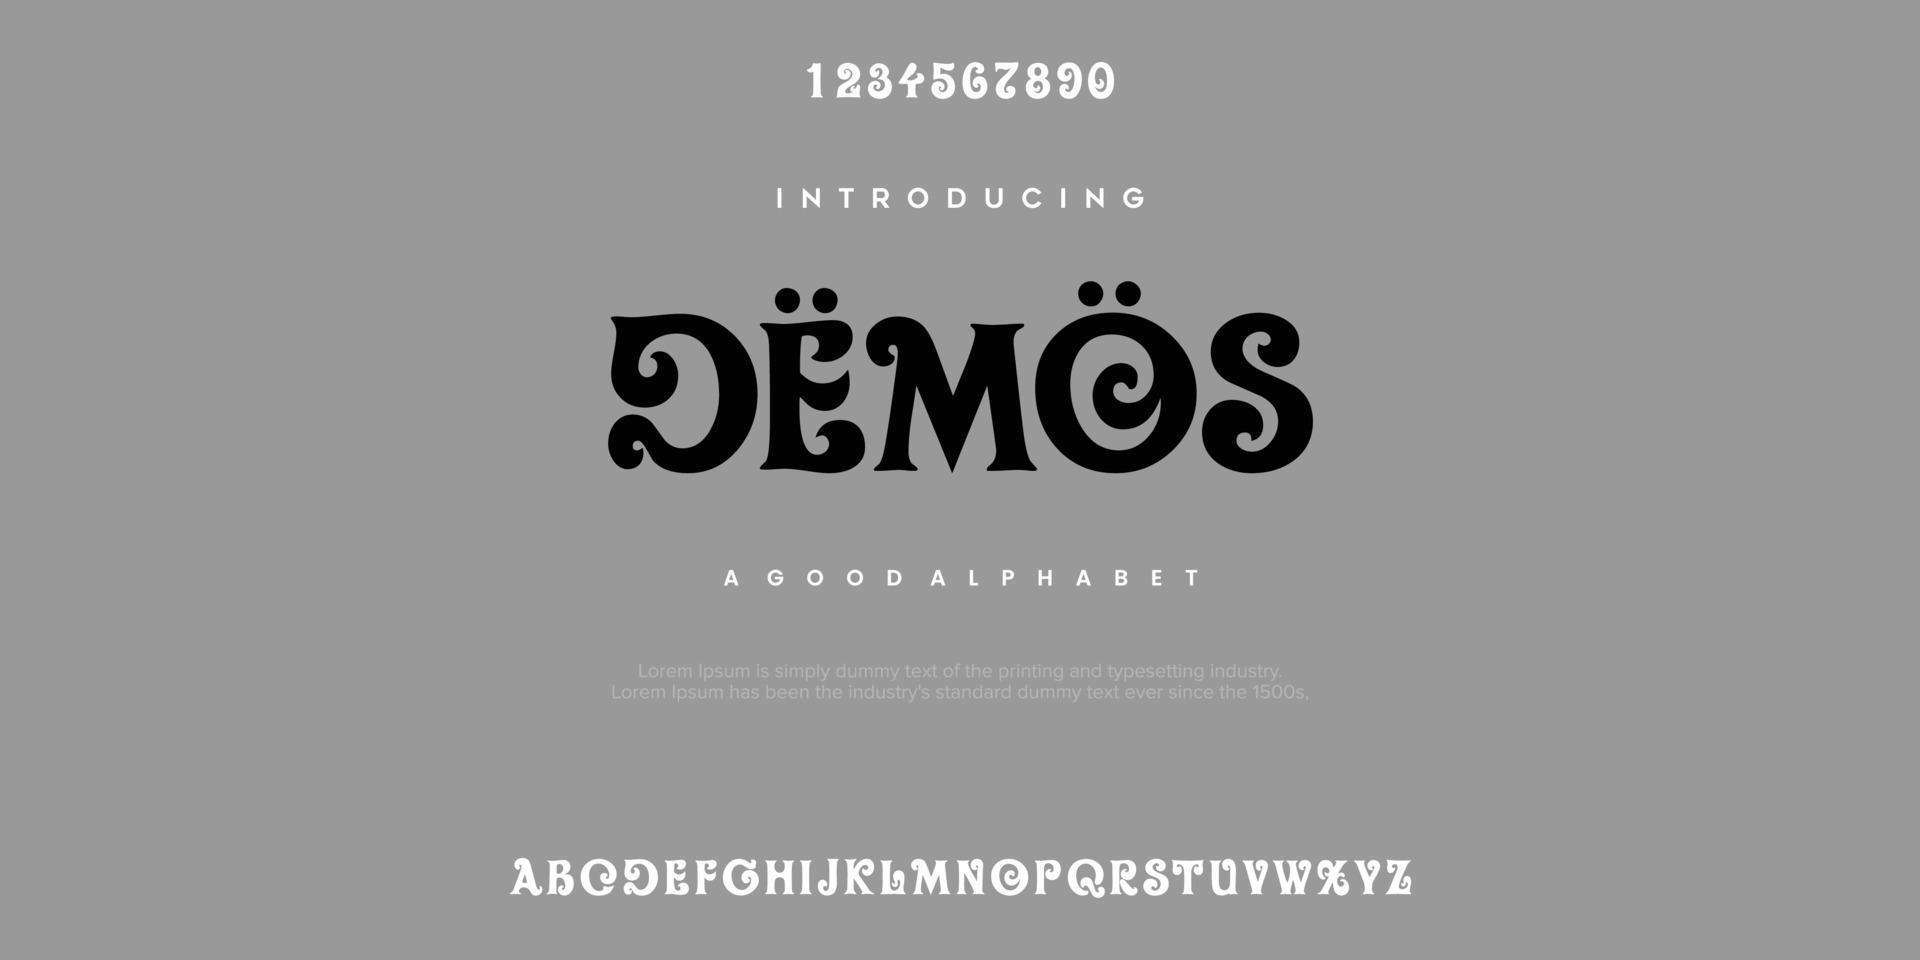 demo's abstracte mode lettertype alfabet. minimale moderne stedelijke lettertypen voor logo, merk enz. typografie lettertype hoofdletters kleine letters en nummer. vector illustratie